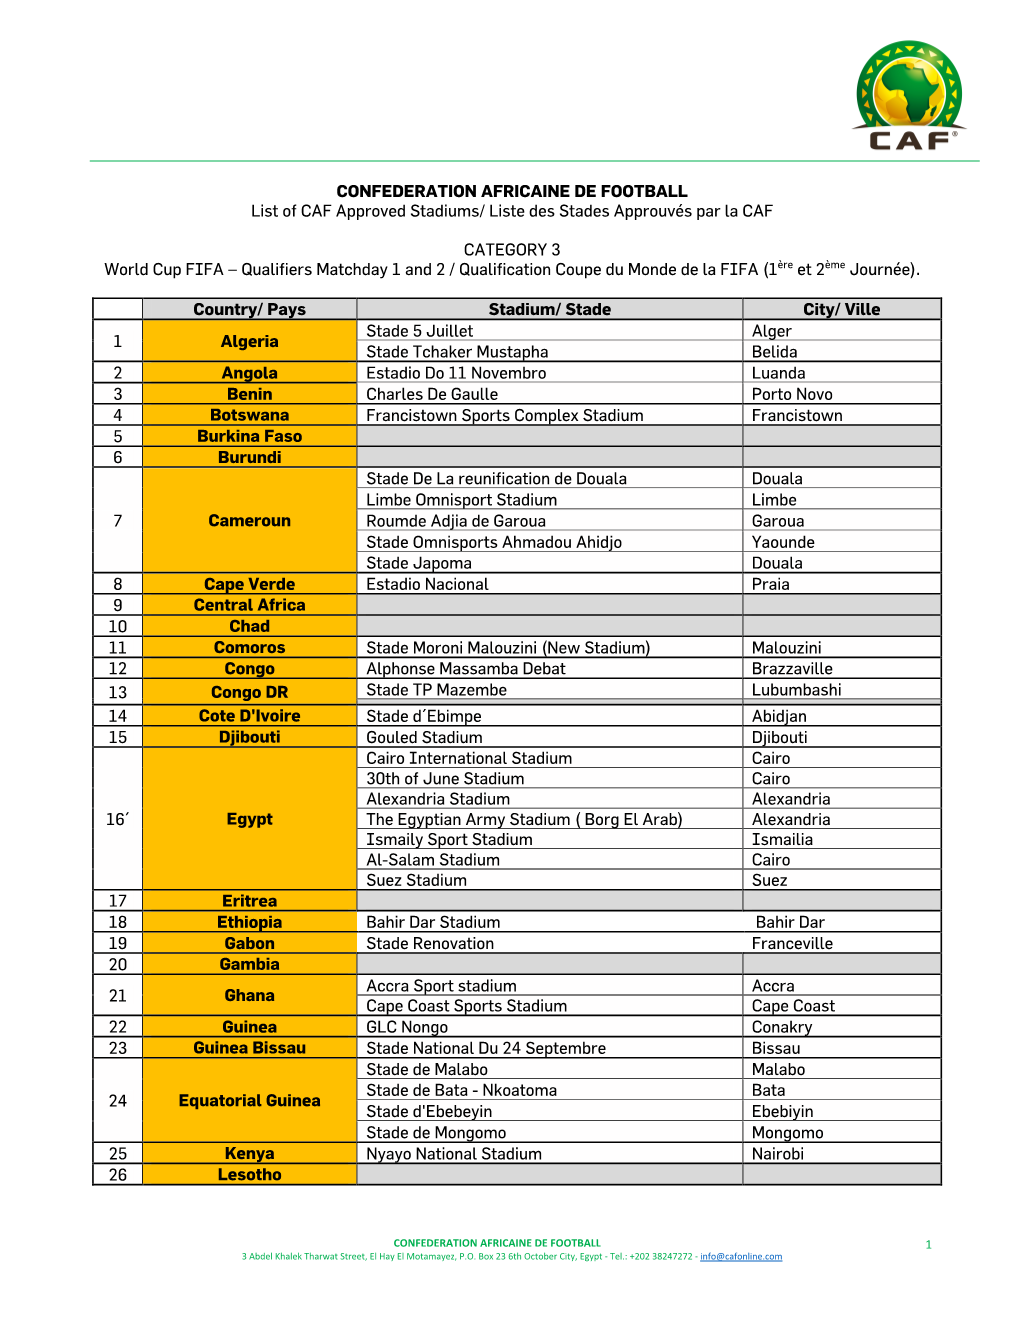 CONFEDERATION AFRICAINE DE FOOTBALL List of CAF Approved Stadiums/ Liste Des Stades Approuvés Par La CAF